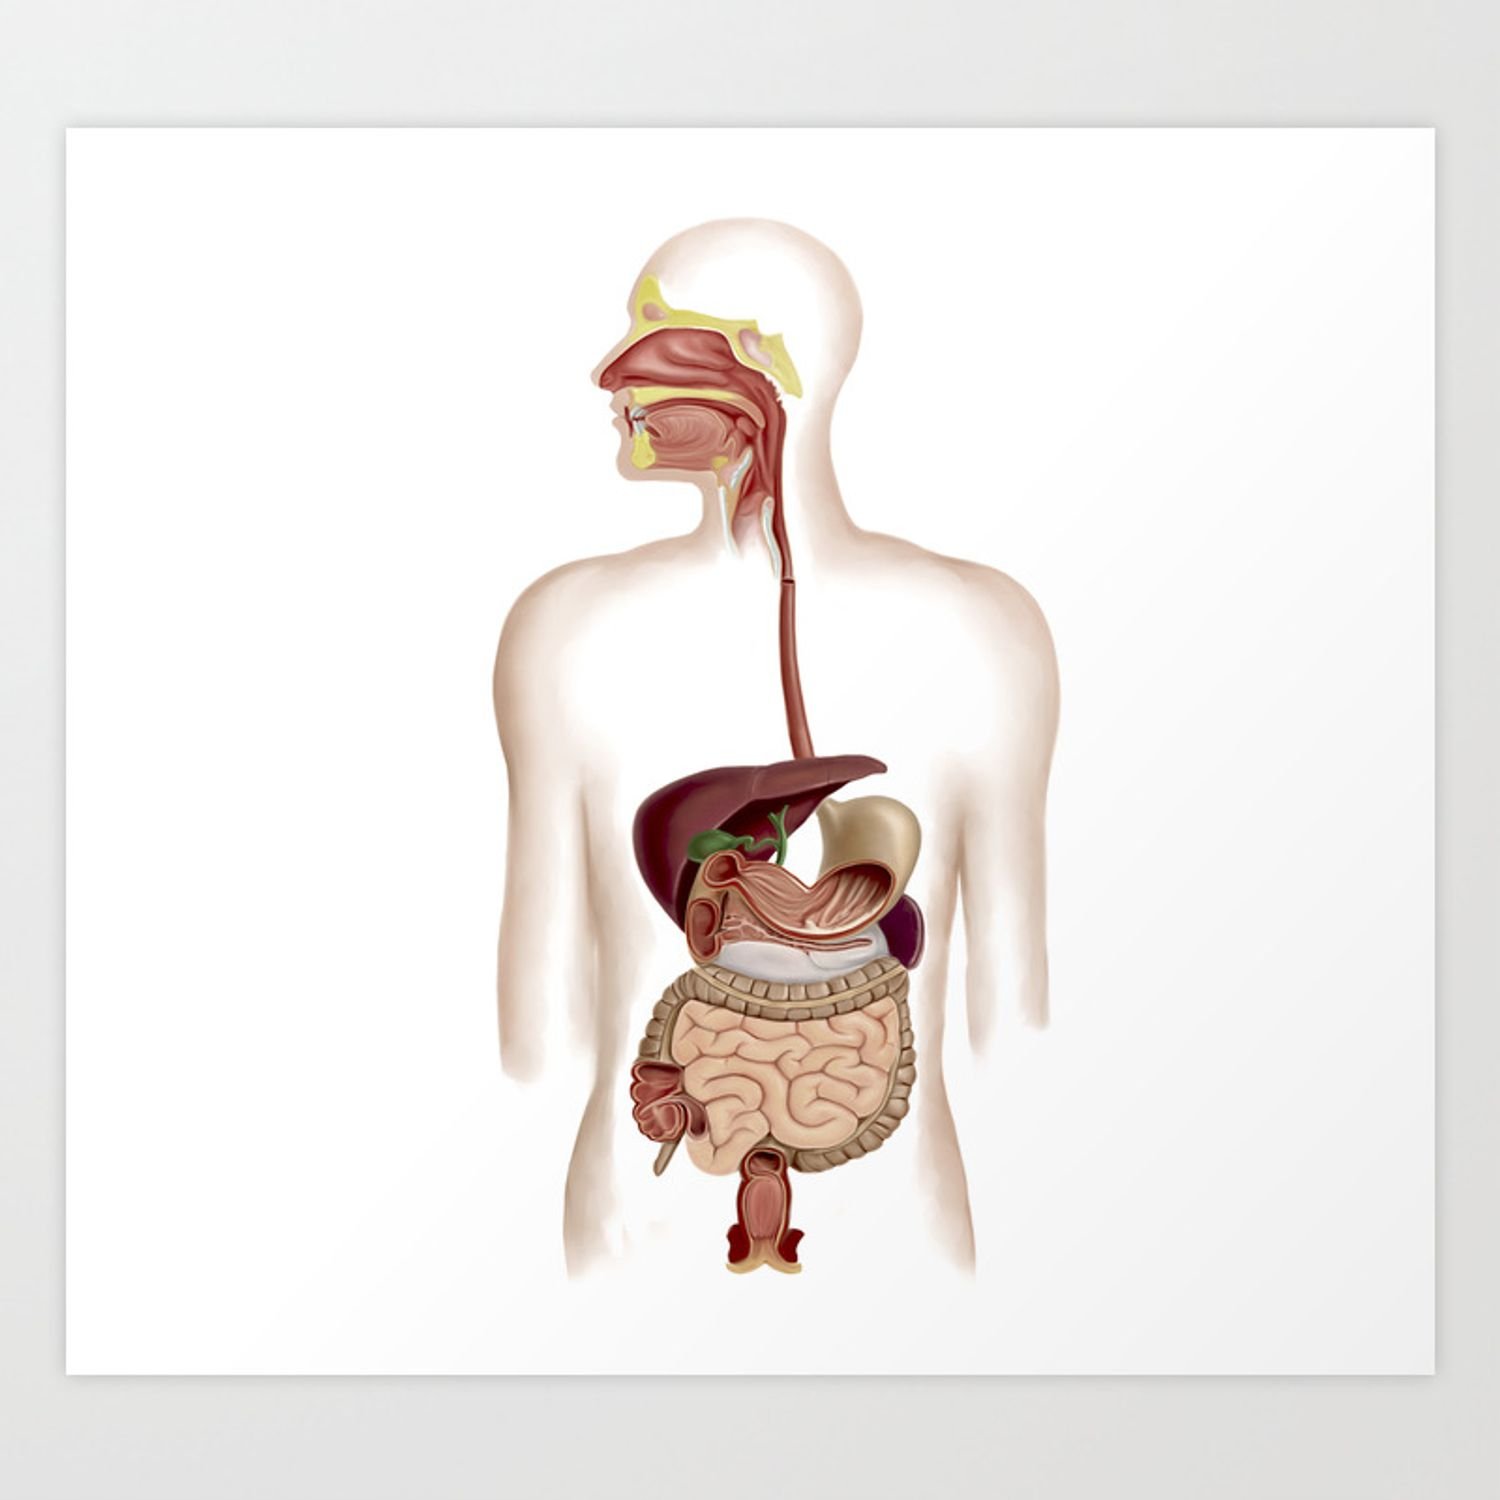 Изображения систем органов человека. Пищеварительная система человека. Пищеварительный тракт человека. Система ЖКТ человека. Желудочно кишечный тракт это пищеварительная система.